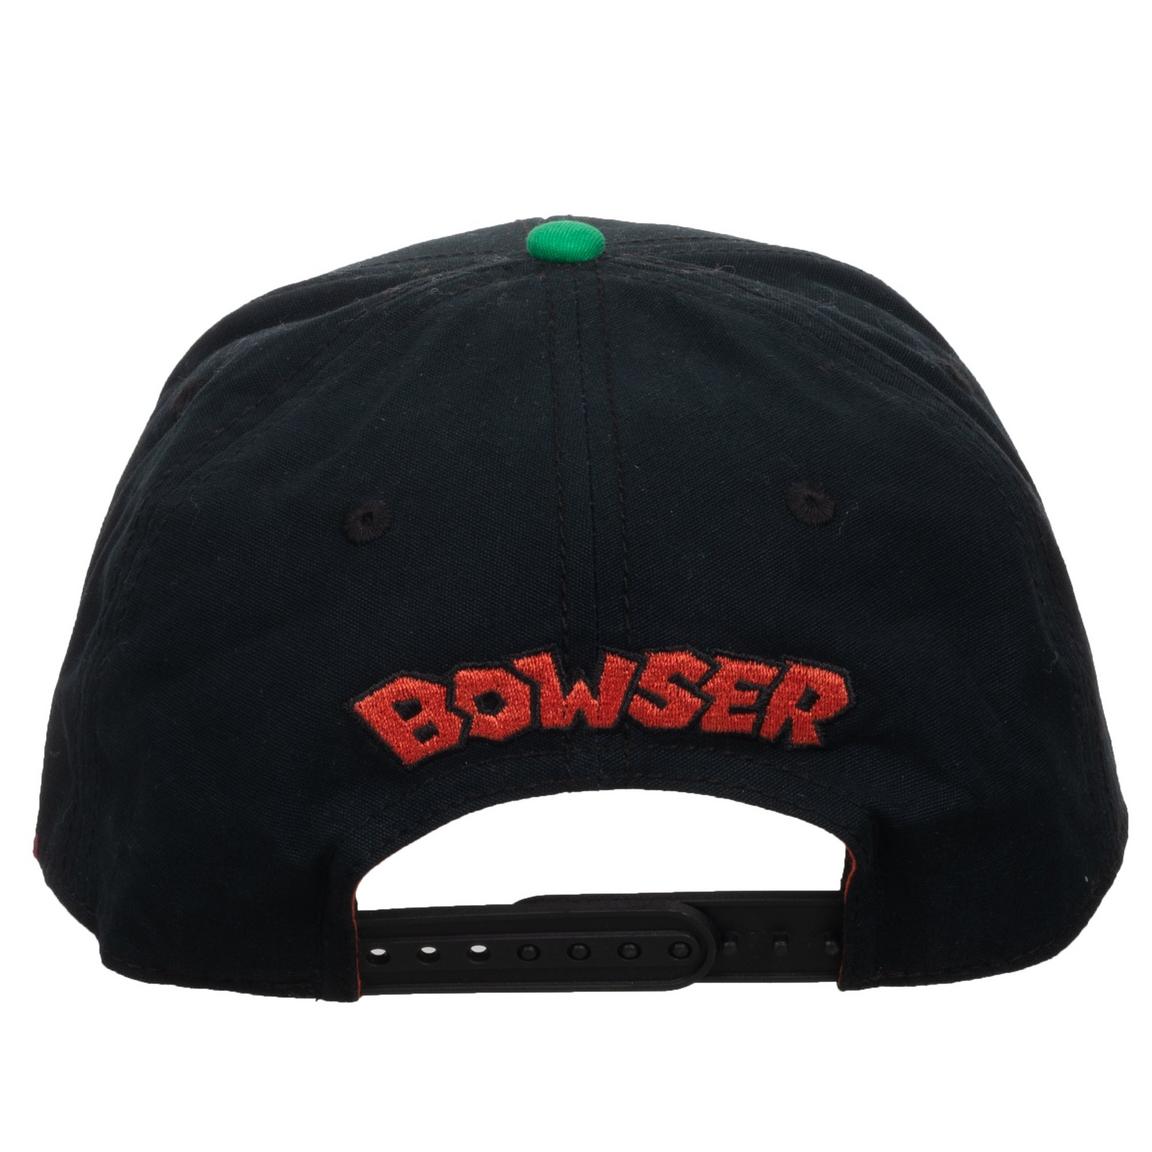 Gorra de Super Mario Bros. Bowser